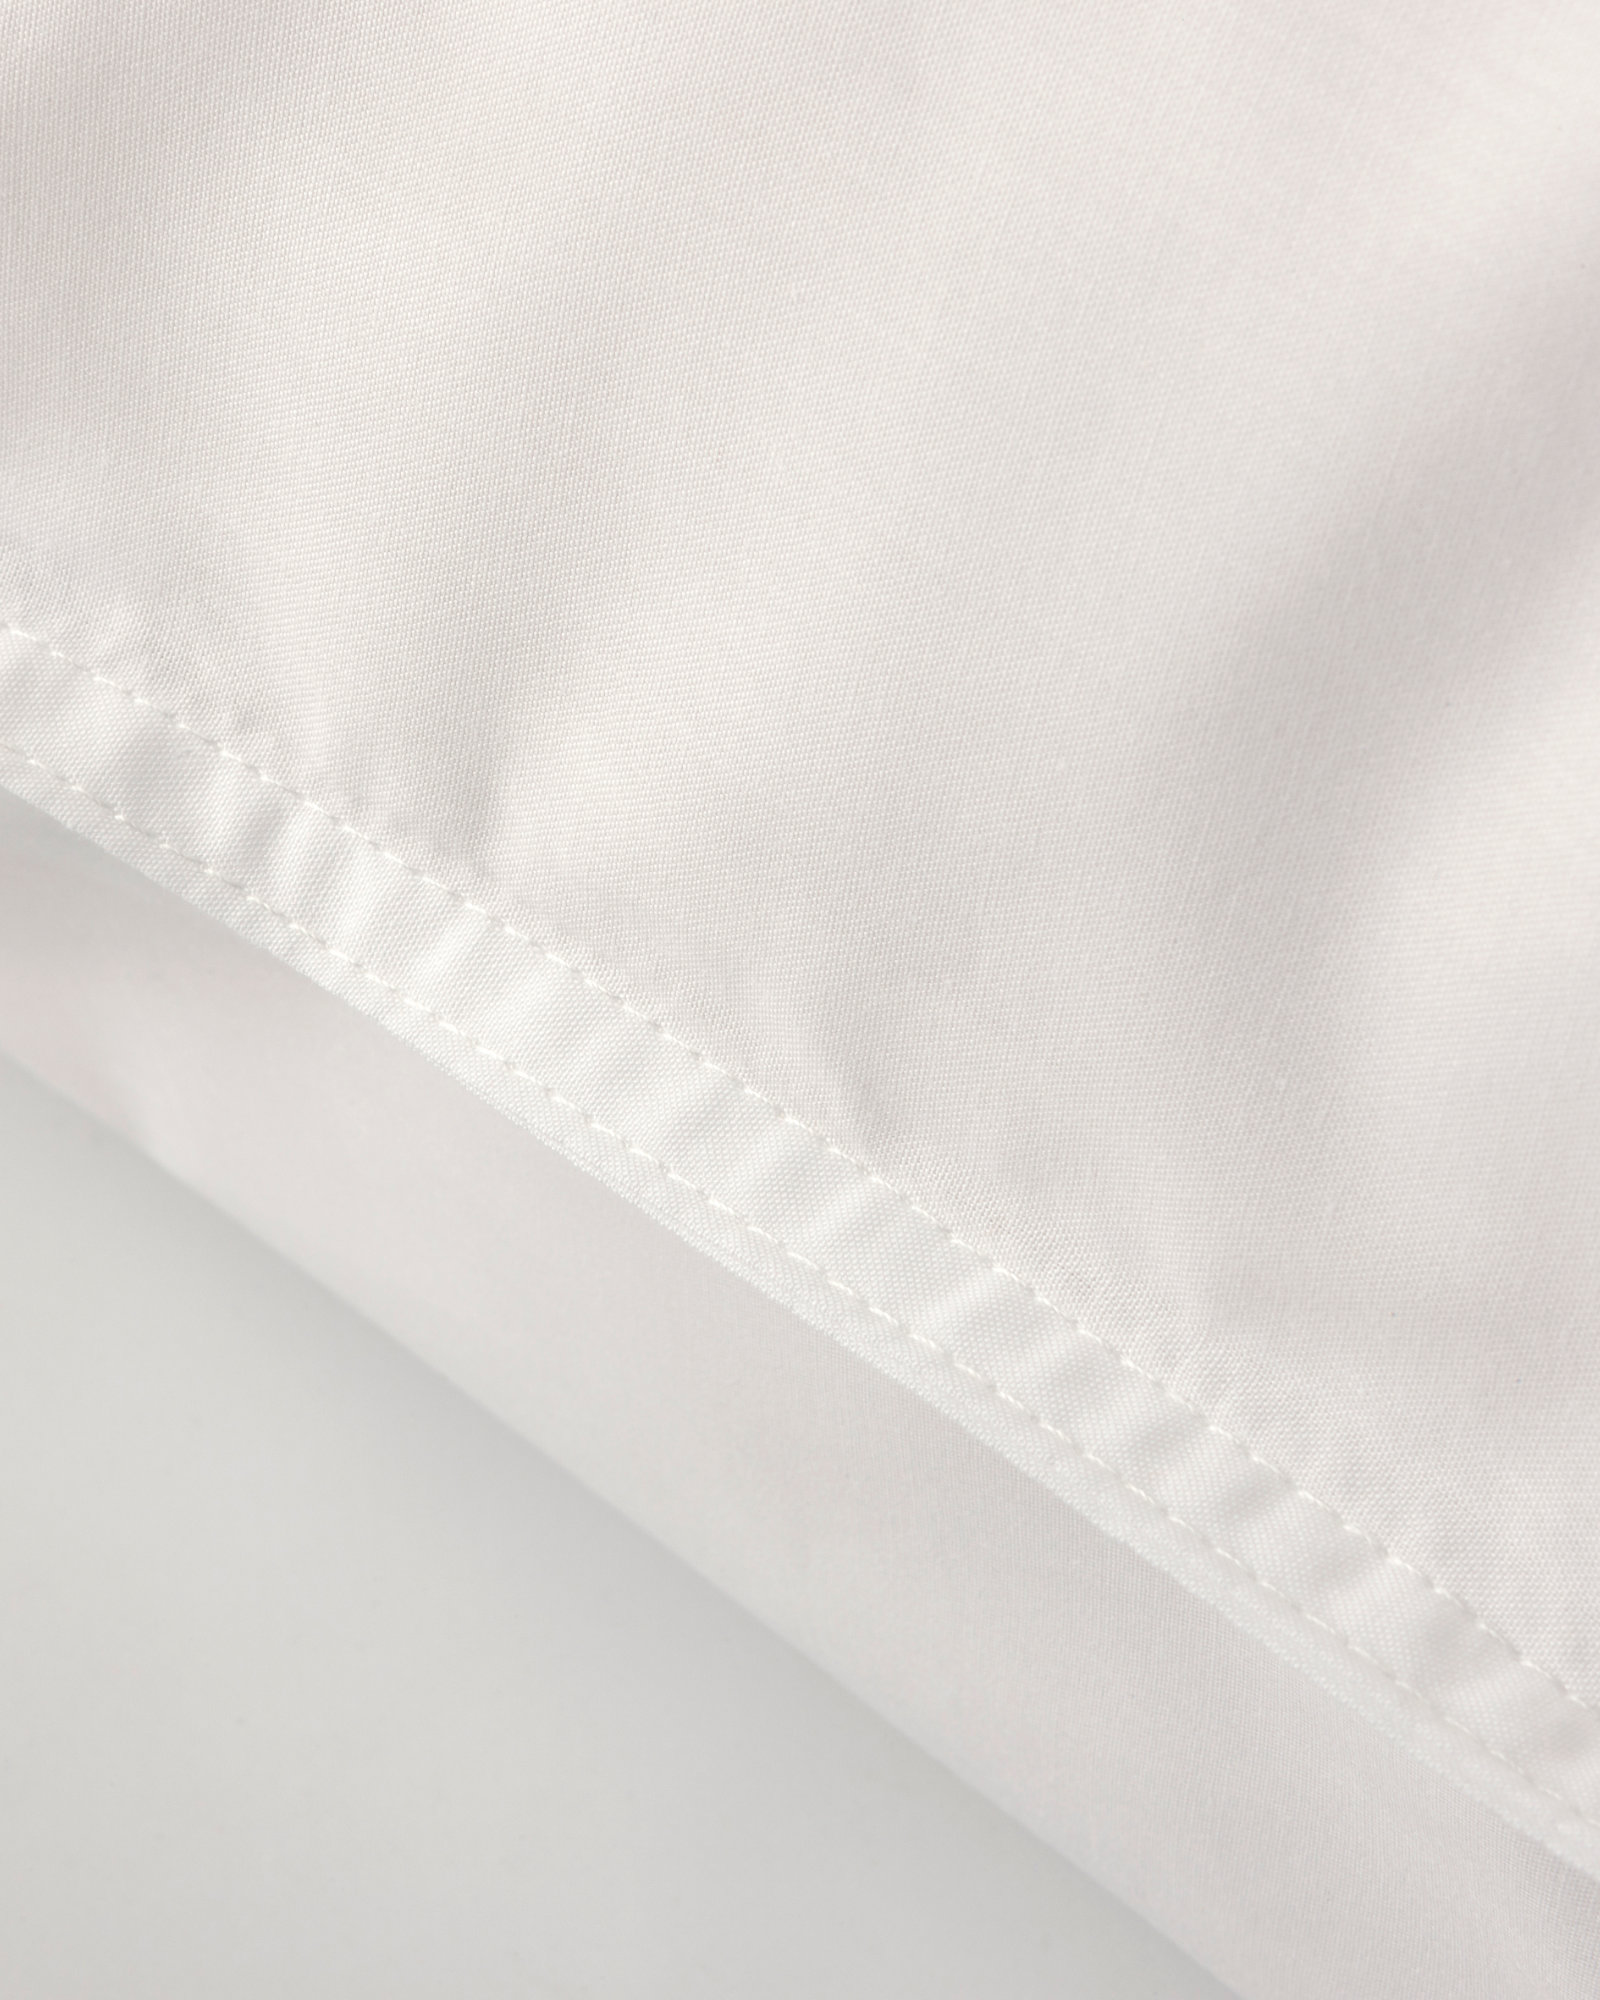 MARIE-MARIE - Pillowcase PURE - 50x75 cm - White